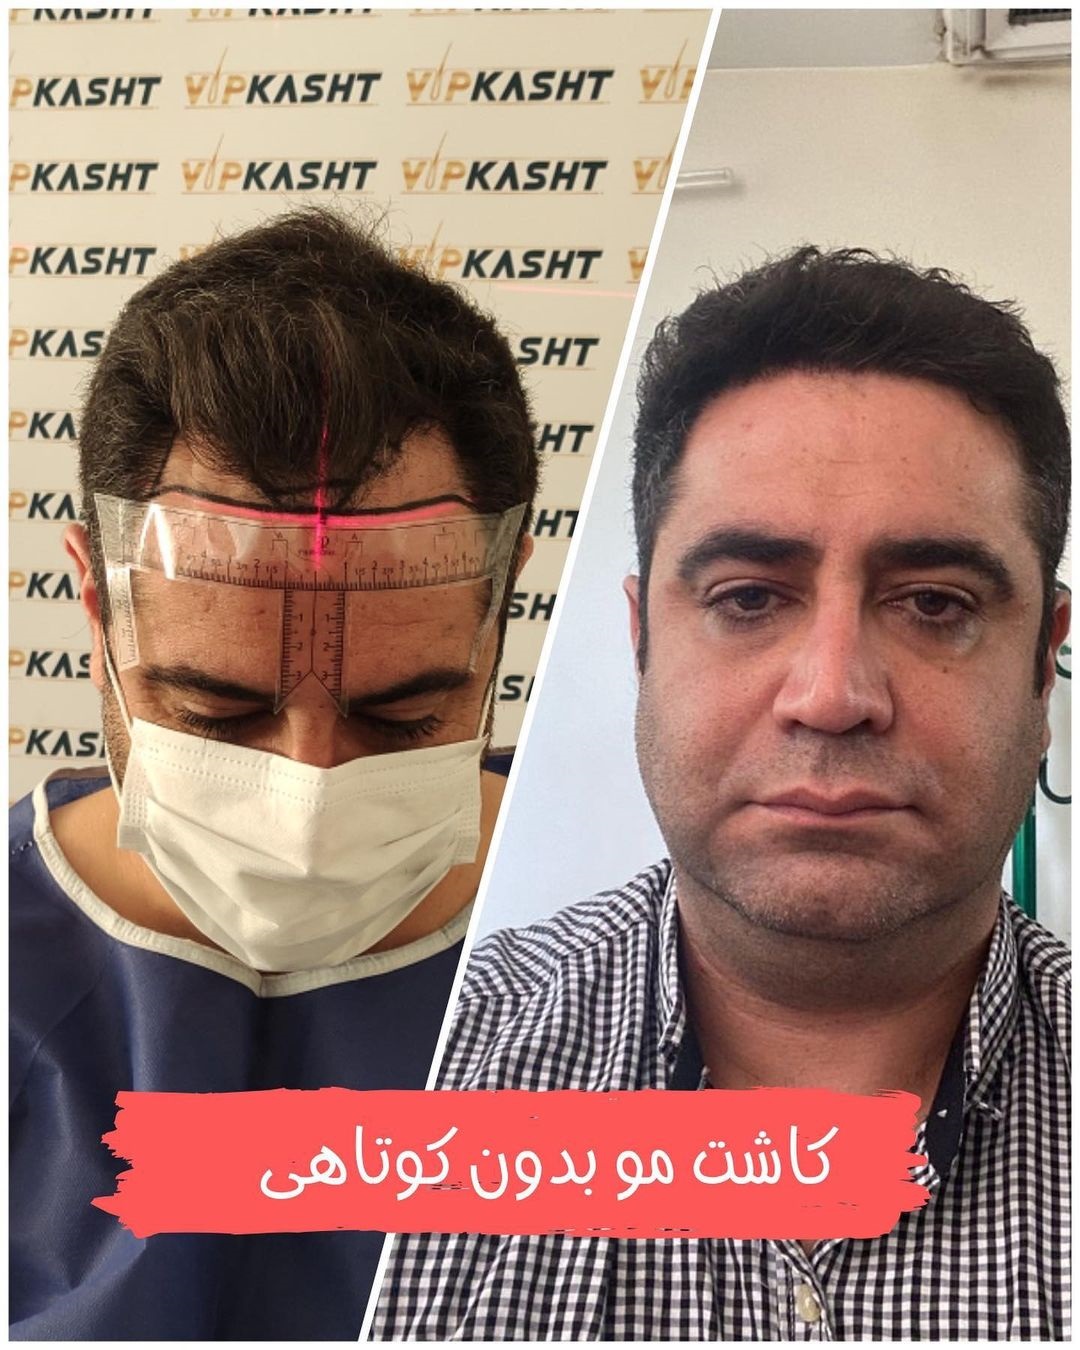 نتیجه کاشت مو در تهران